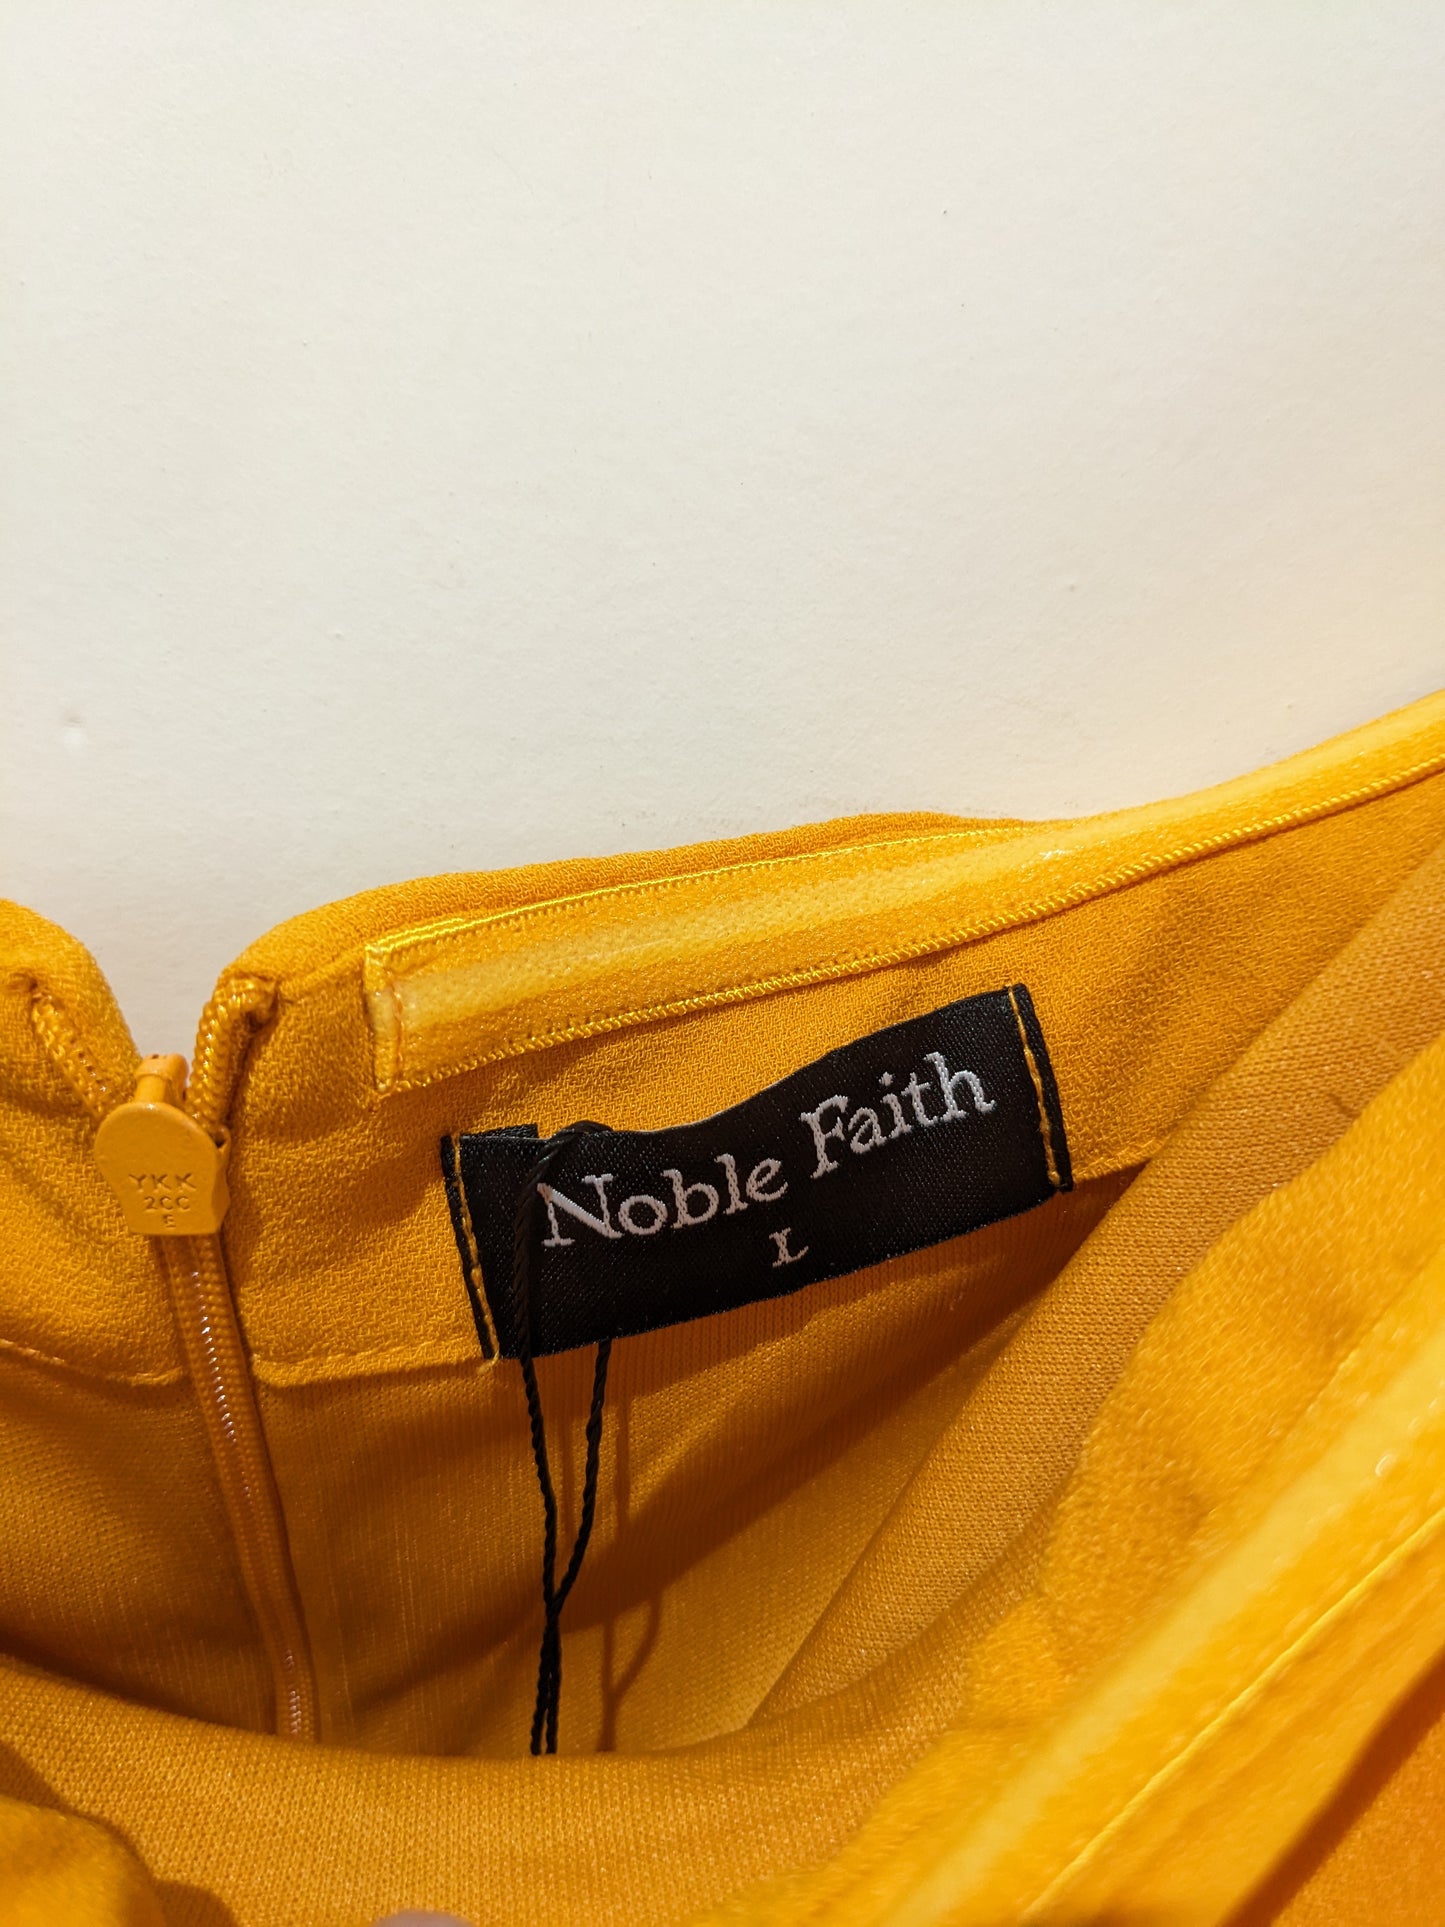 Noble Faith Yellow Jumpsuita